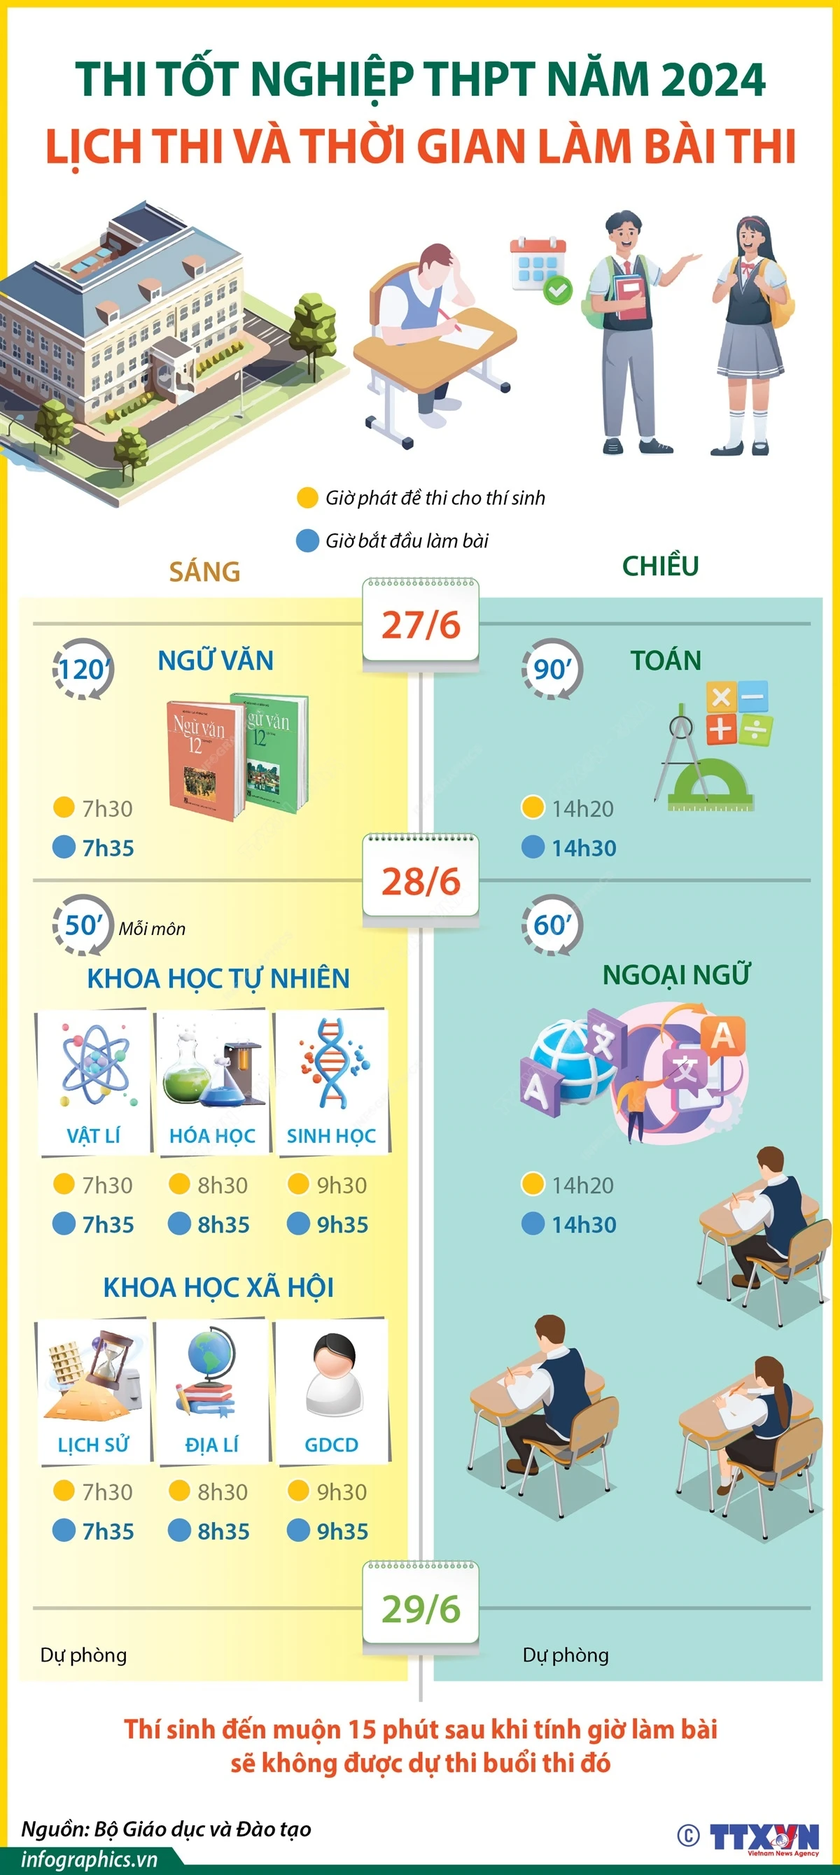 Thông tin lịch thi và thời gian làm bài kỳ thi tốt nghiệp THPT năm 2024 (nguồn TTXVN/Vietnam+)